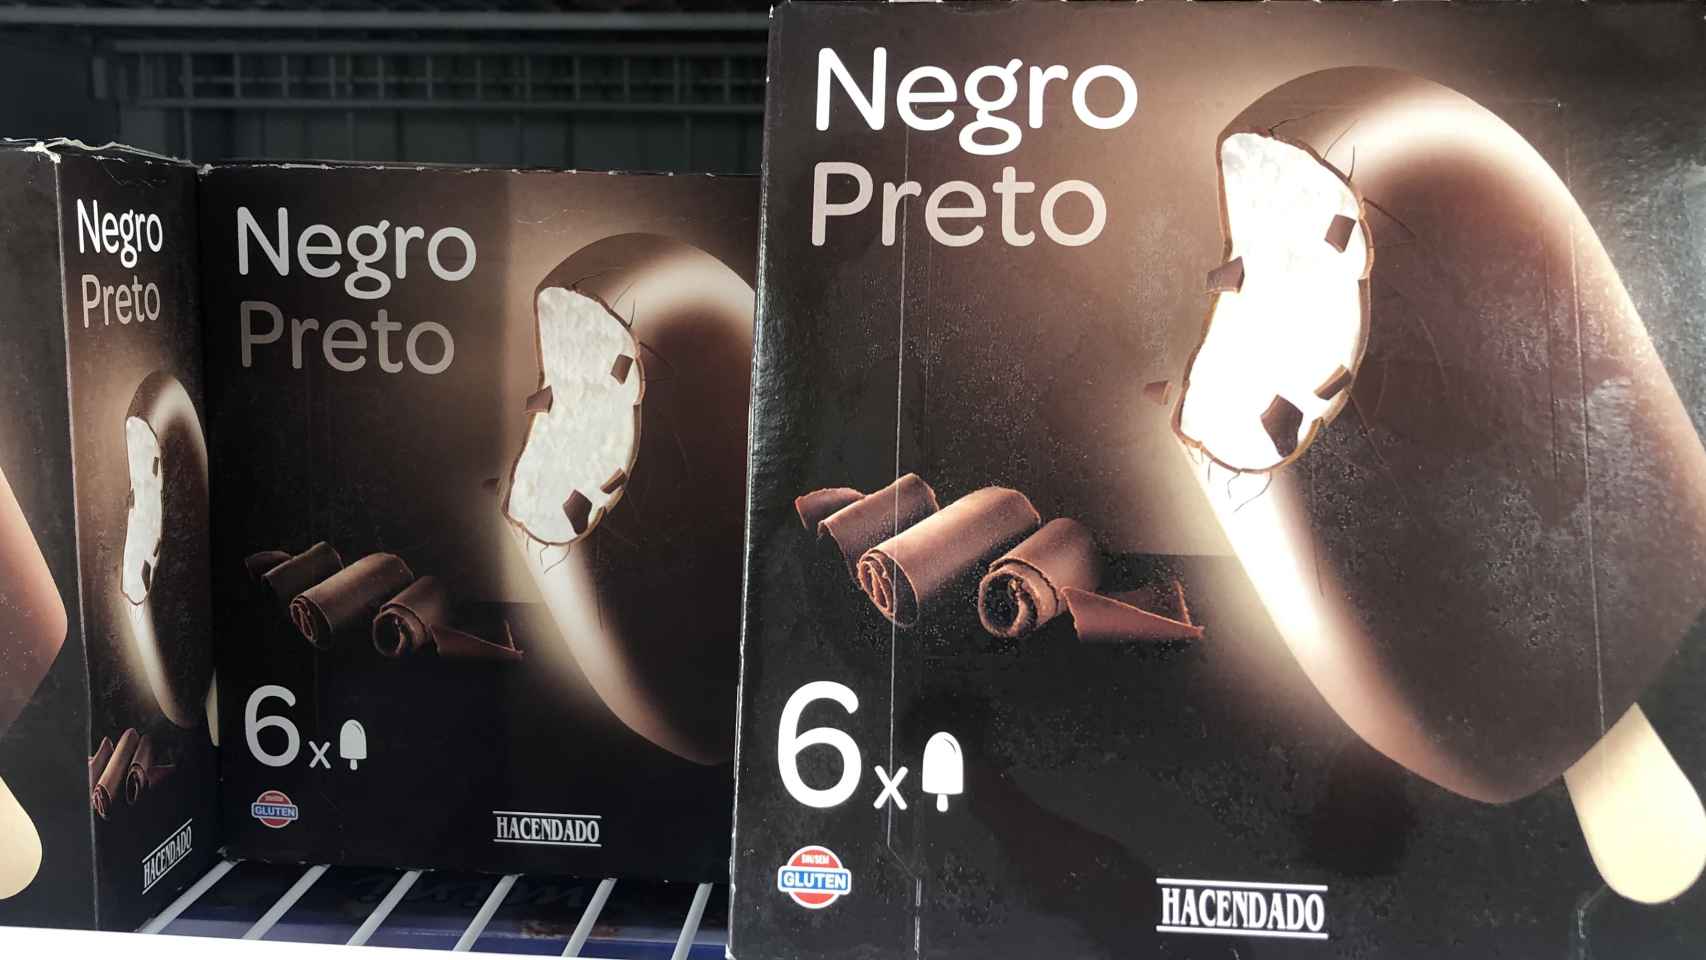 El 'Negro preto' cuesta poco más de 2 euros.